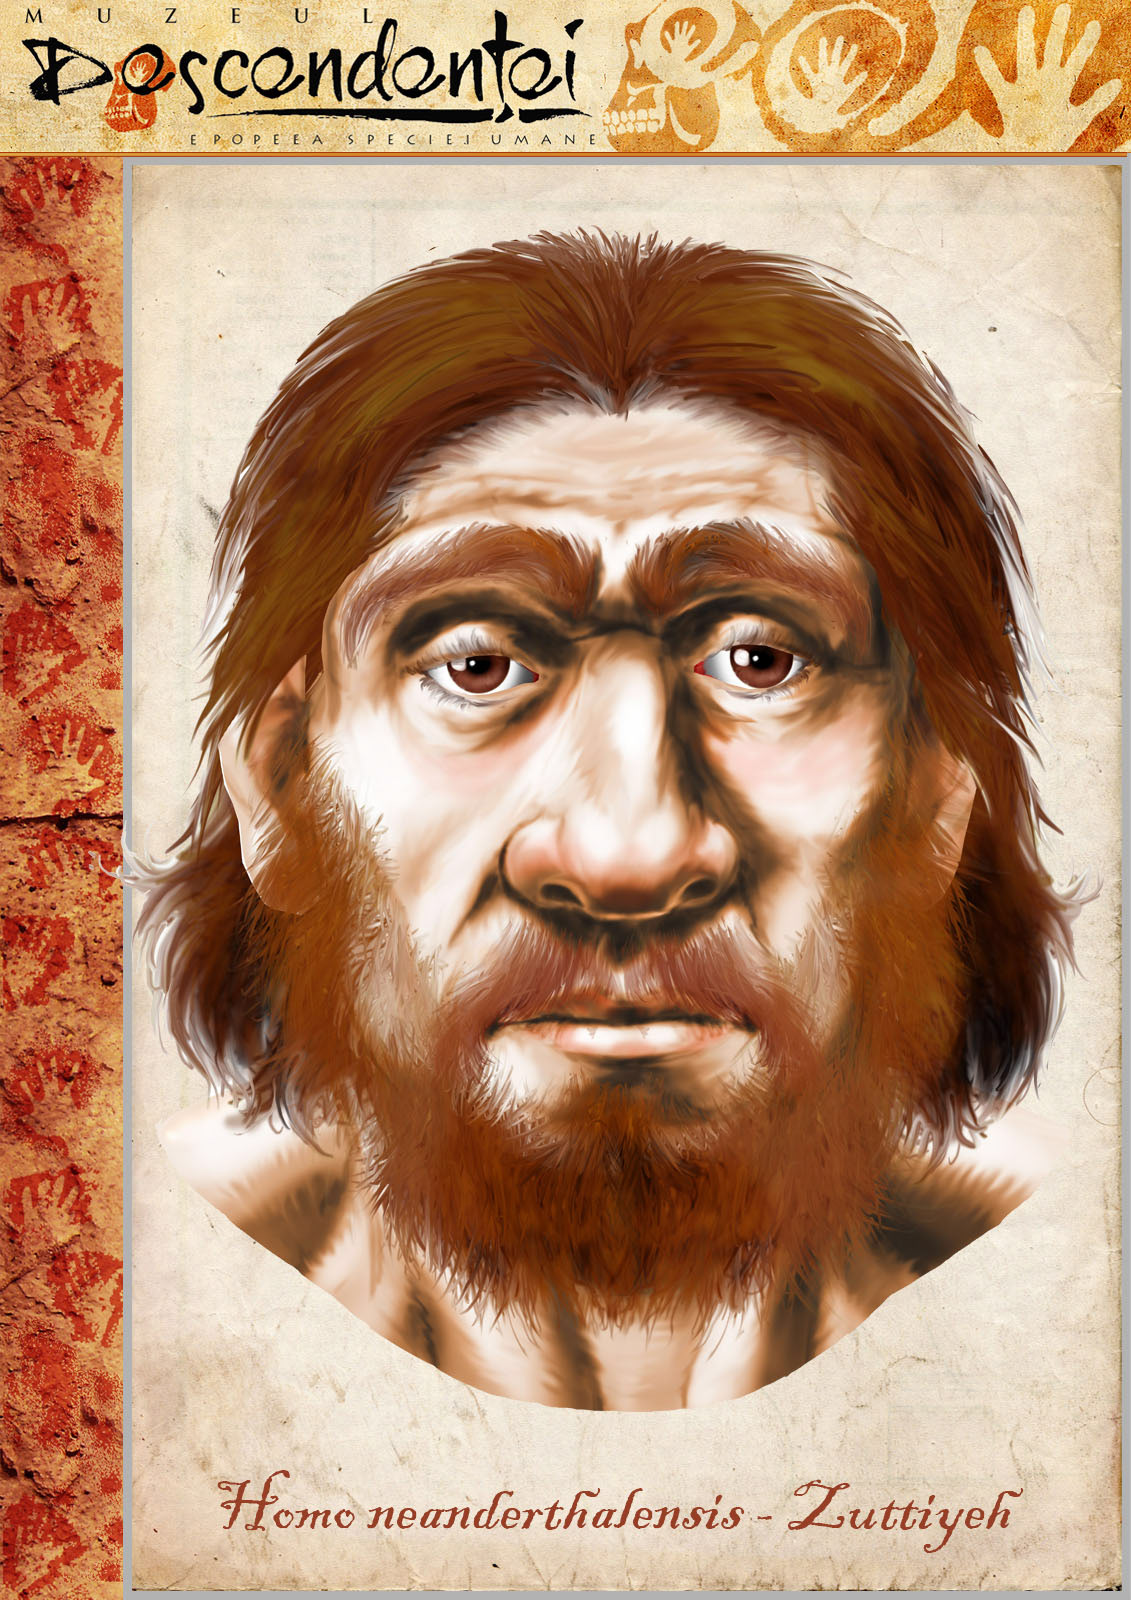 Zuttiyeh  homo neanderthal human evolution sahelanthropus ardipithecus kenyanthropus australopithecus paranthropus habilis ergaster erectus heidelbergensis Lucy